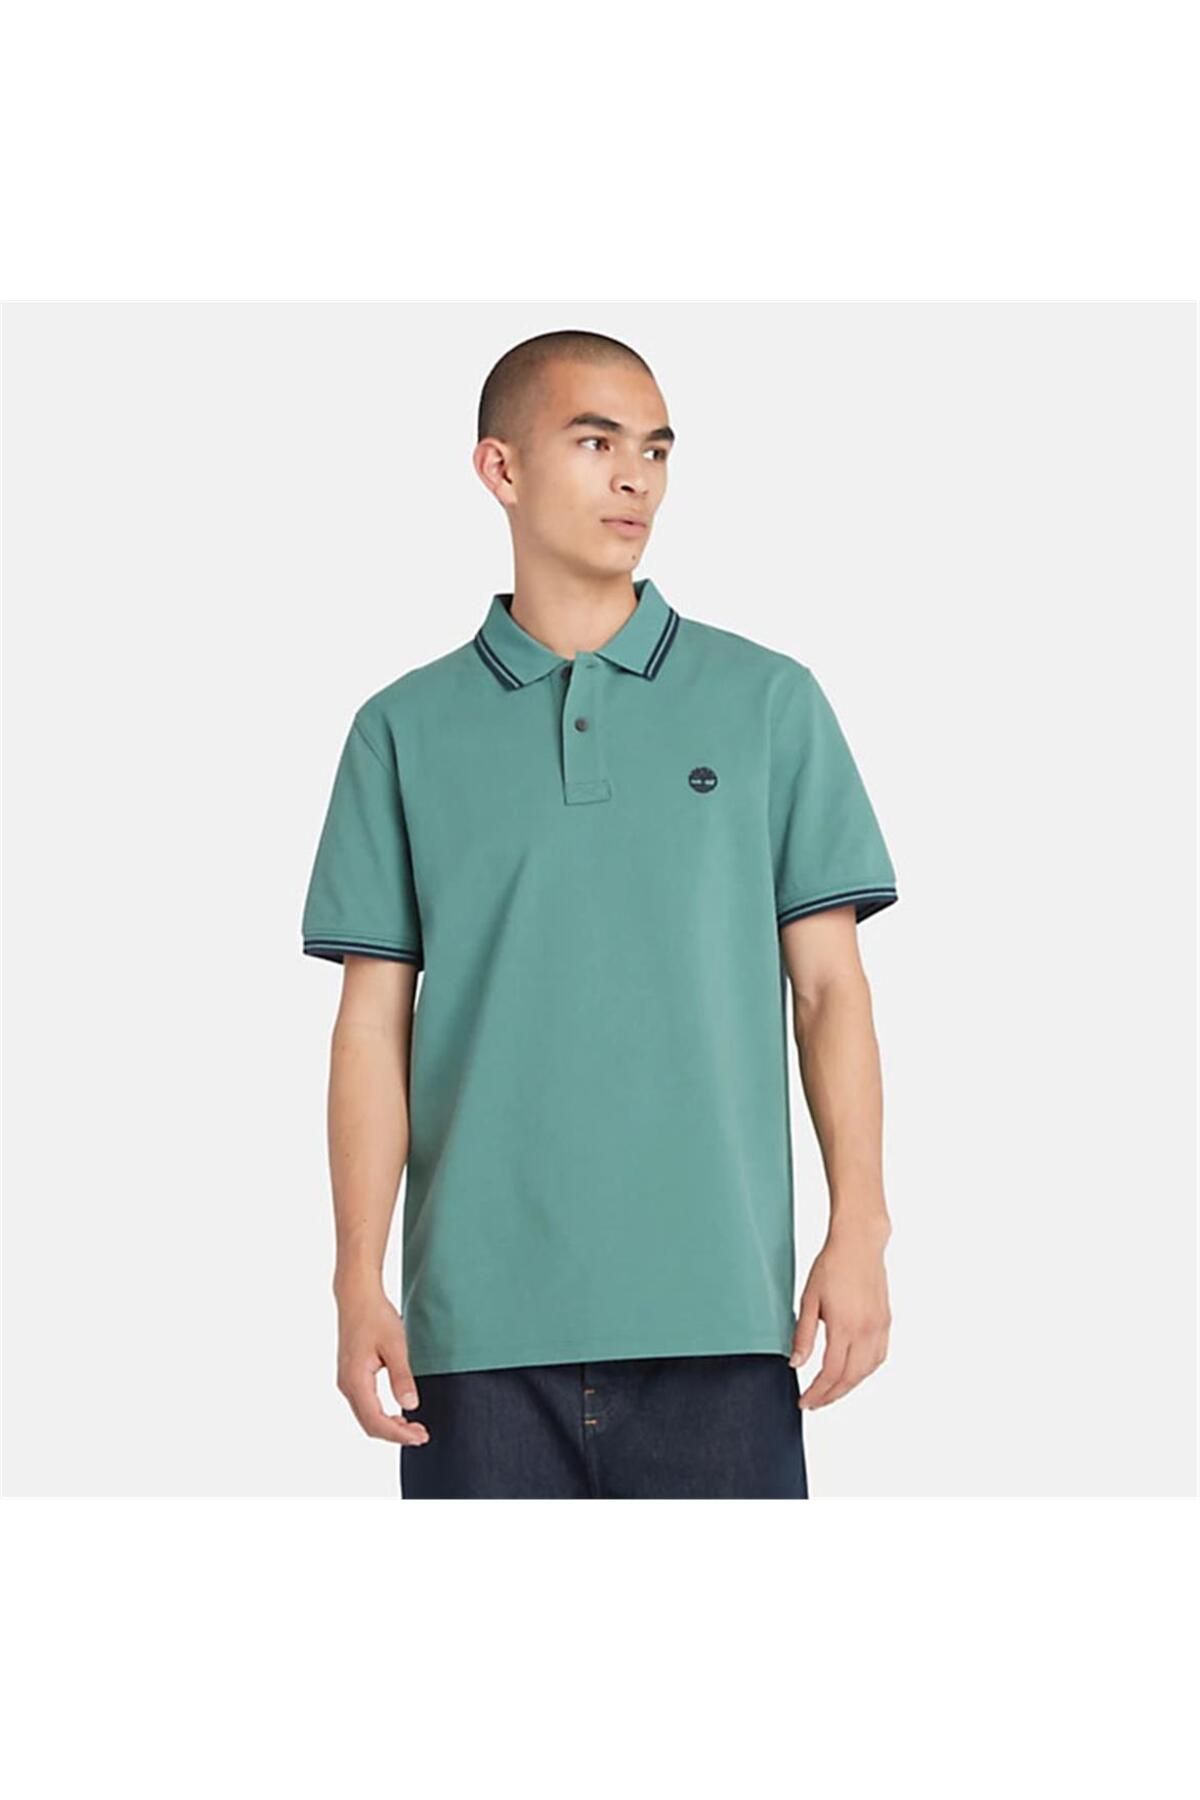 Timberland Tipped Pique Short Sleeve Polo Sea Pıne Erkek T-shirt